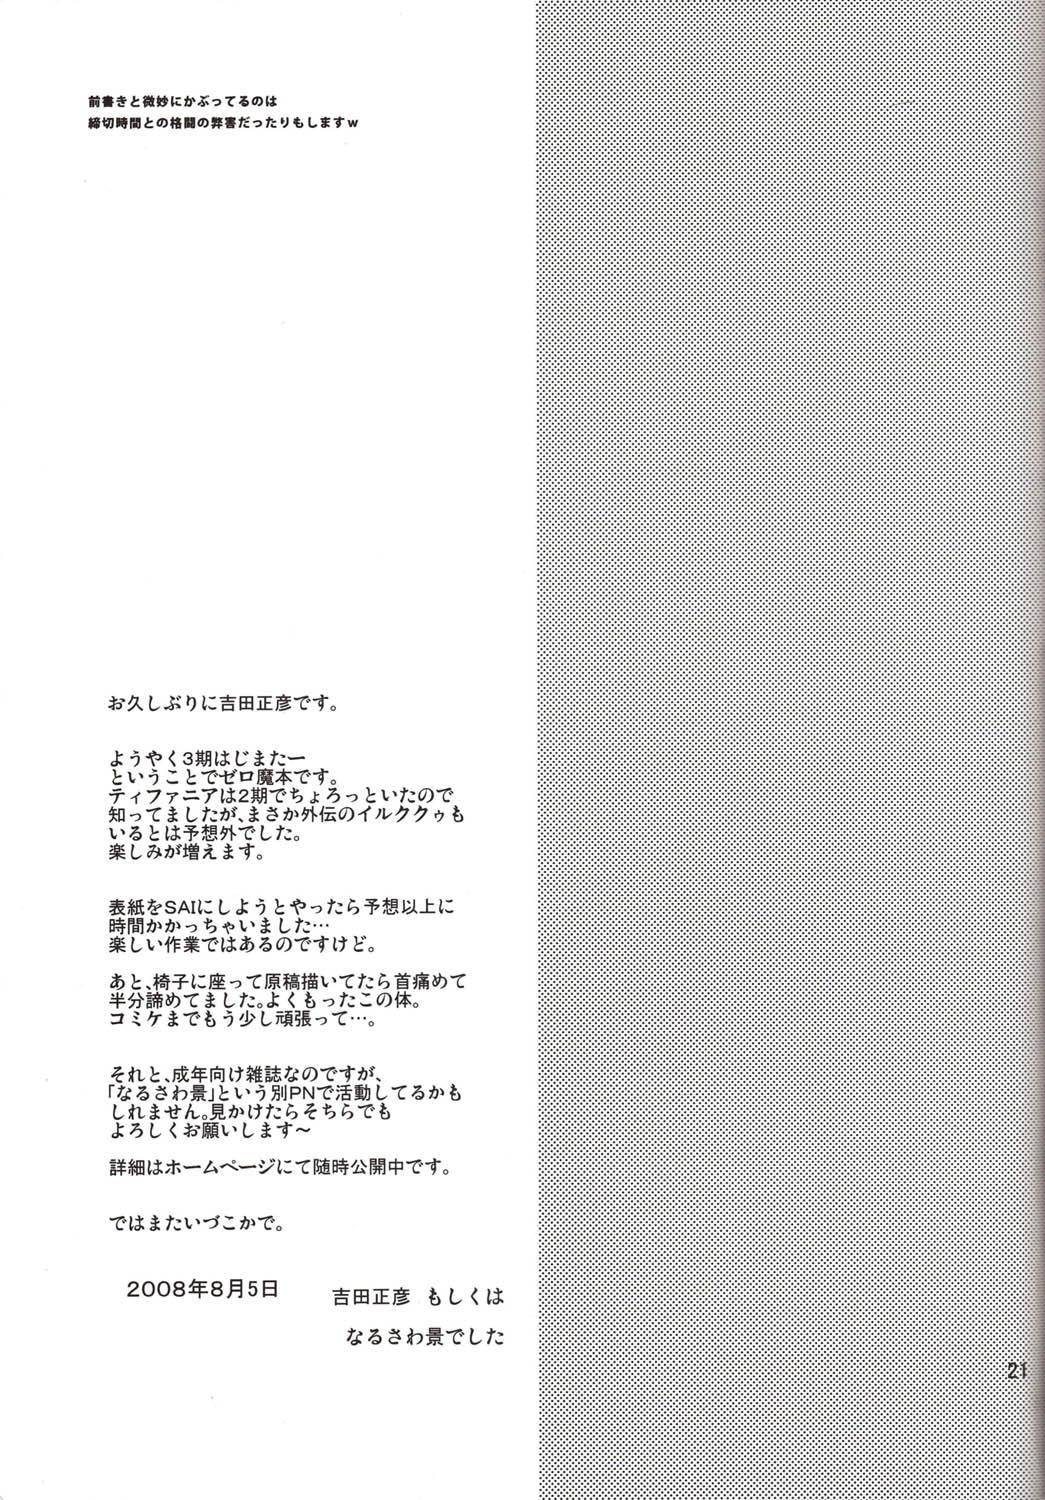 Ass Dekkai no to chicchai no - Zero no tsukaima Amigo - Page 21